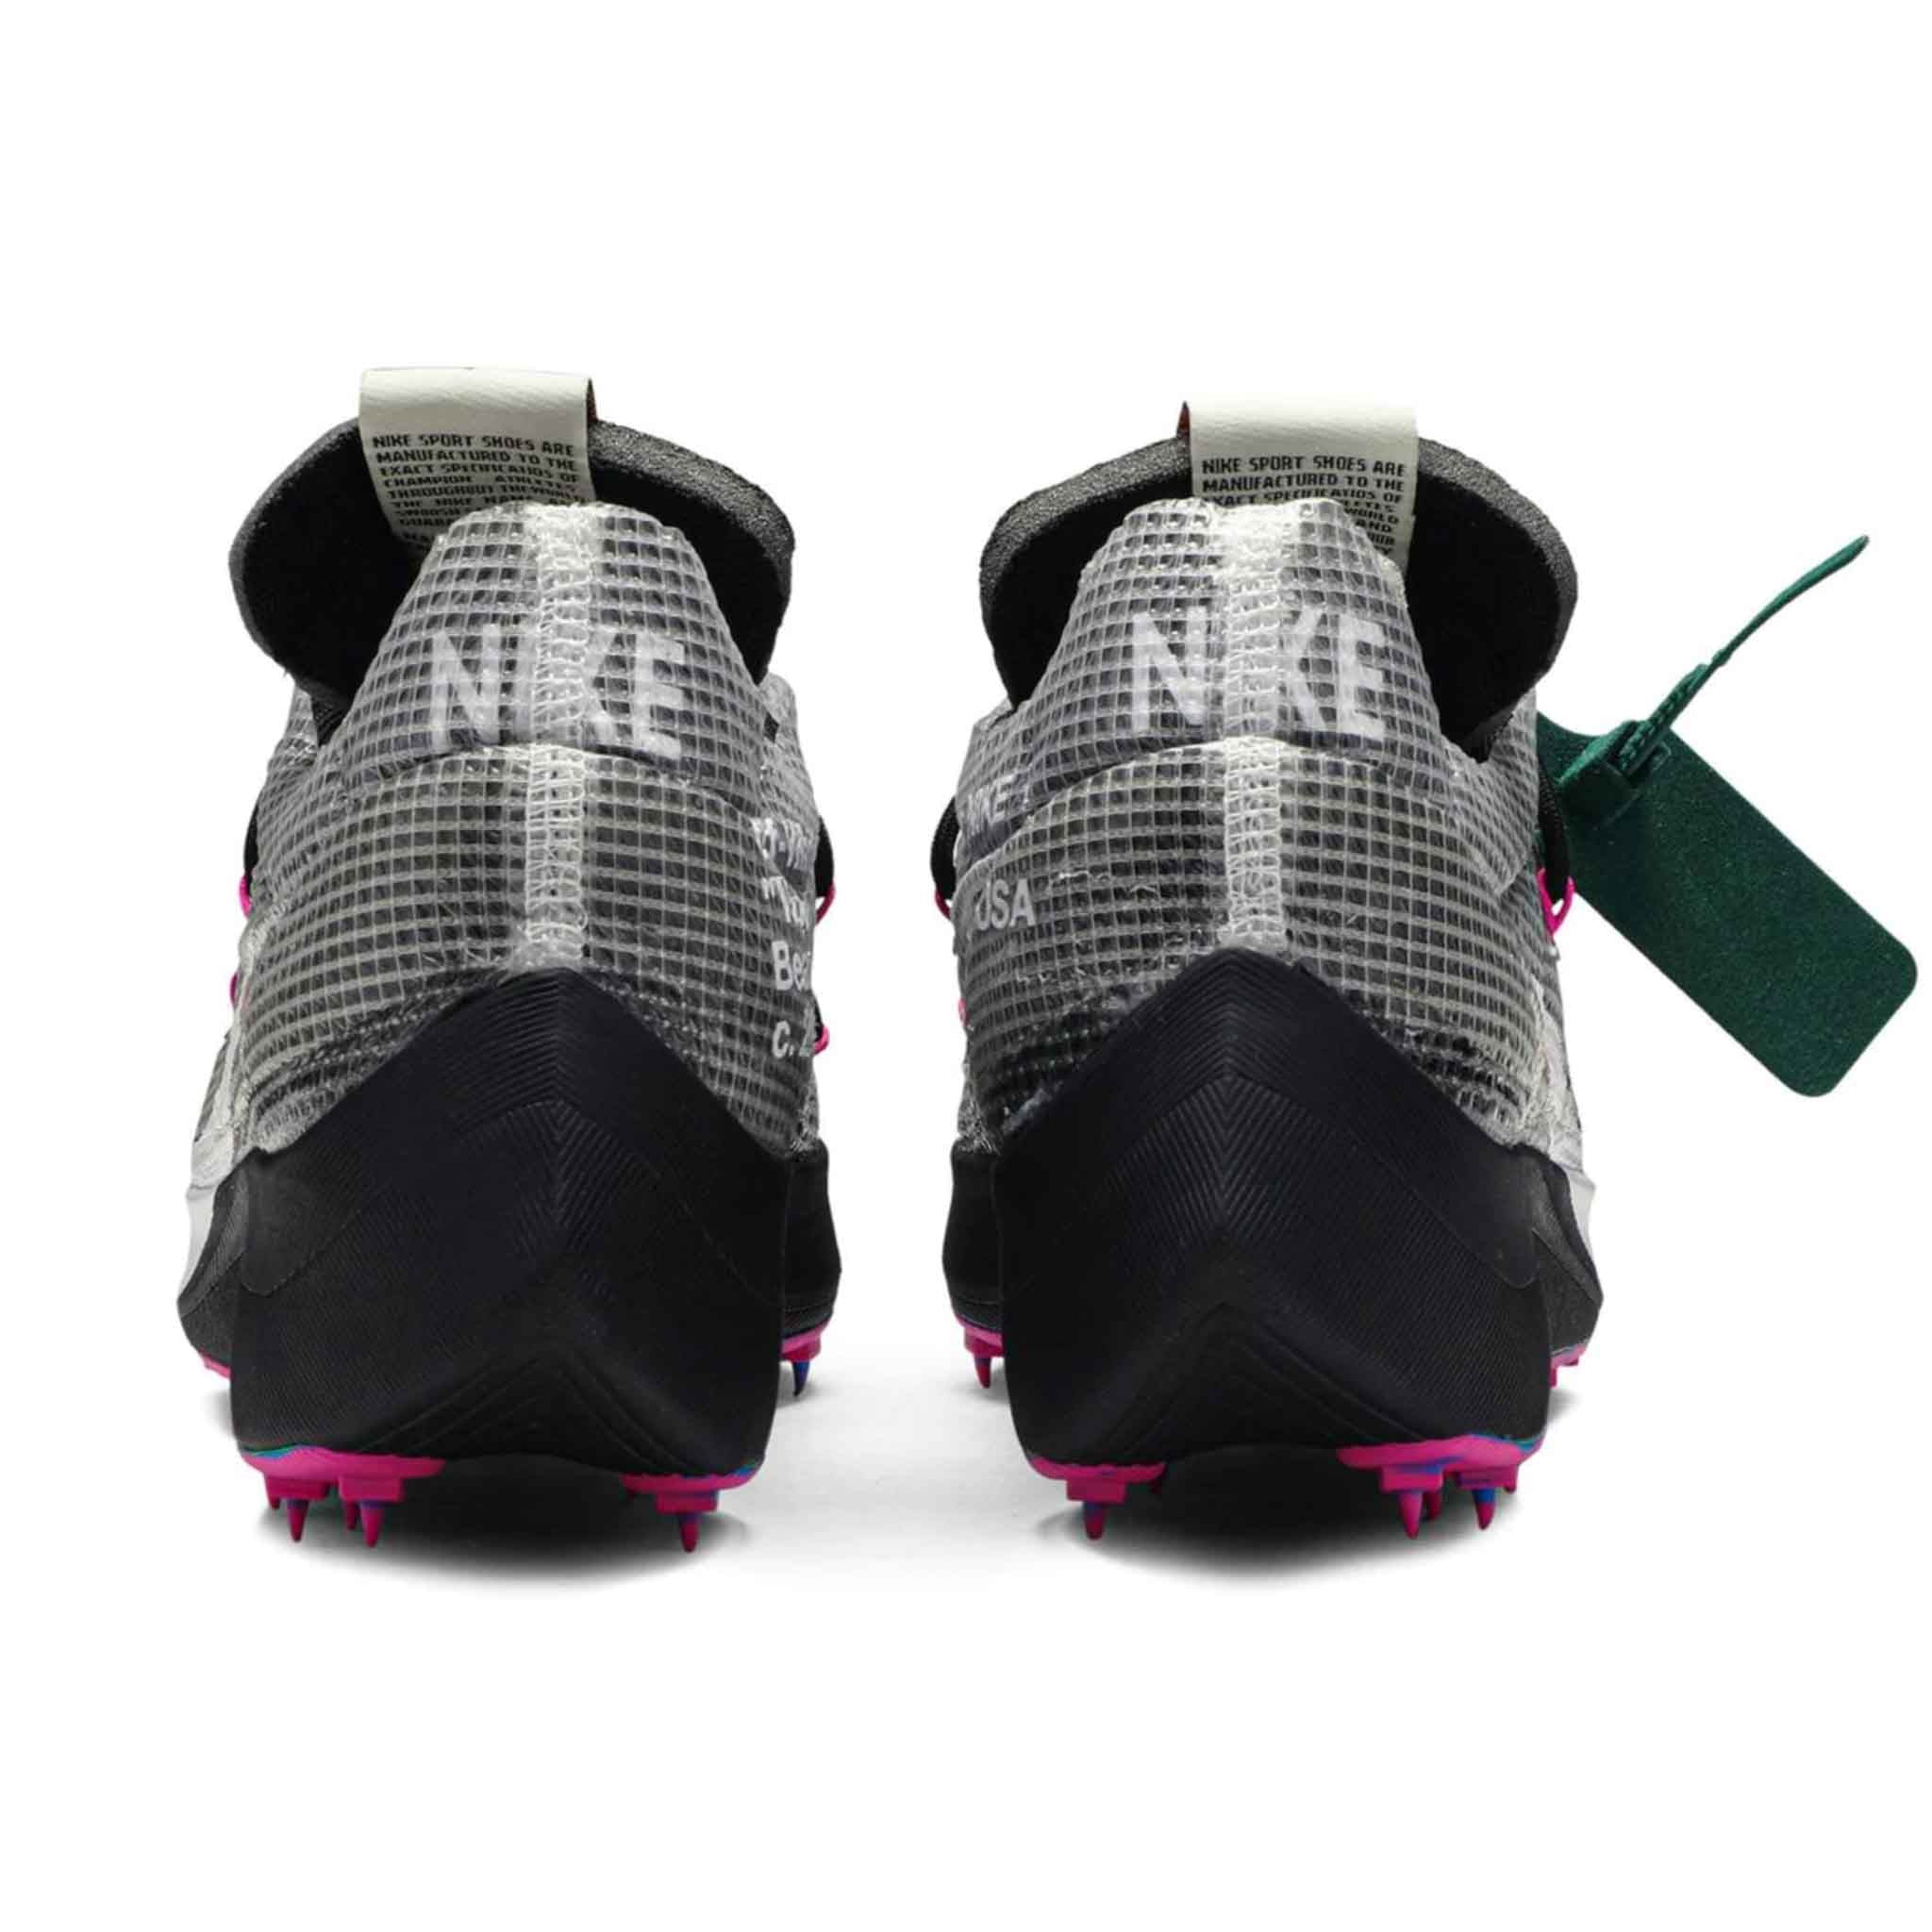 Nike x OFF-WHITE Vapor Street Sneakers in Black/Fucshia